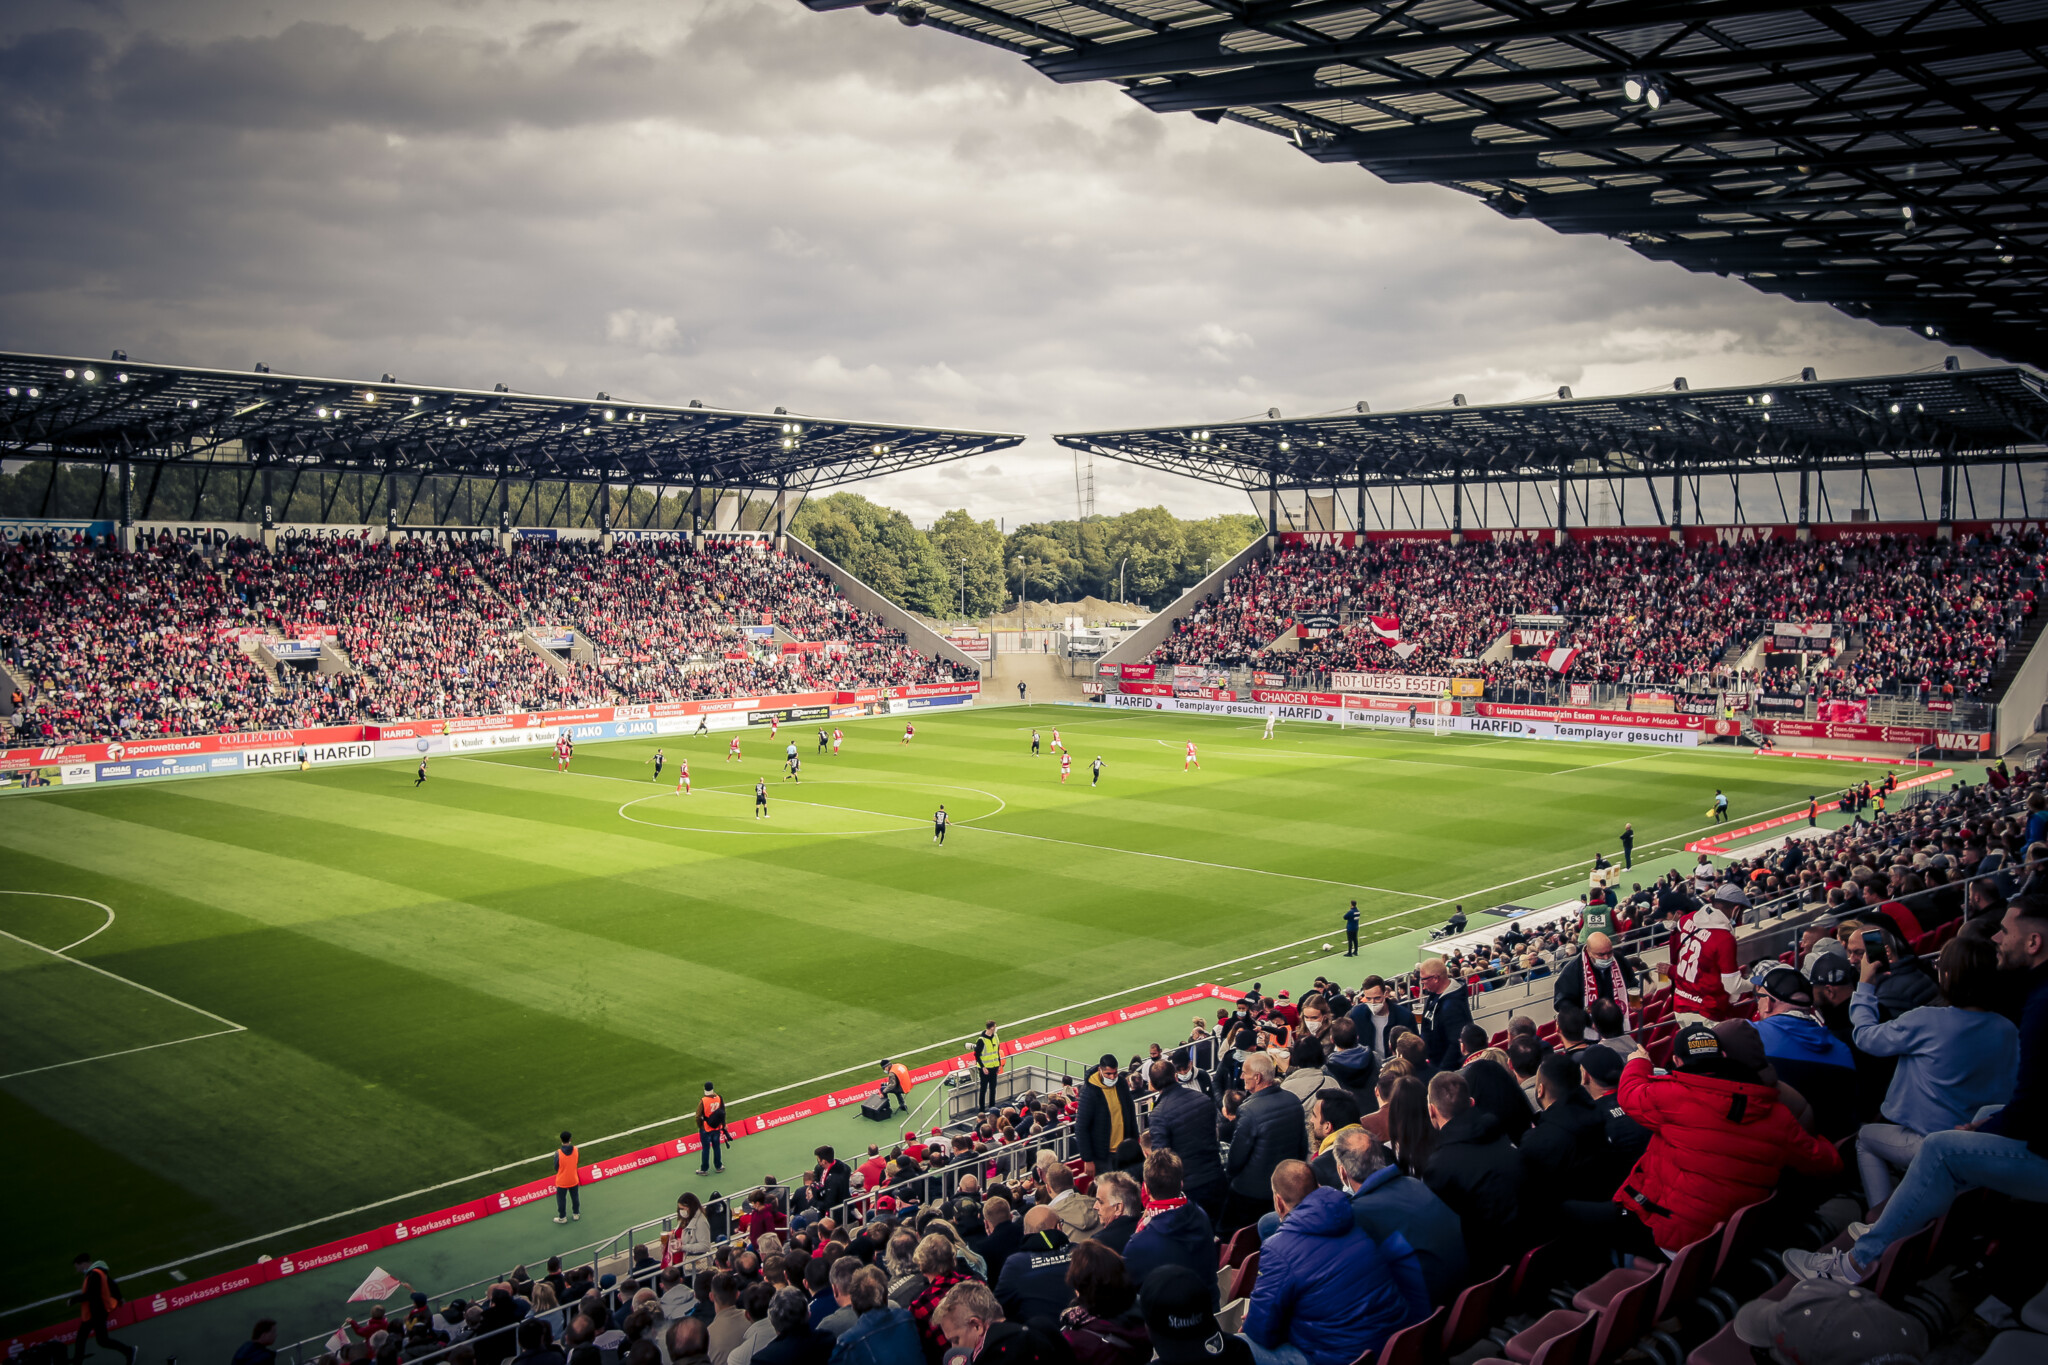 Vorverkauf startet: Tickets für das Match gegen Alemannia Aachen sind ab morgen erhältlich.